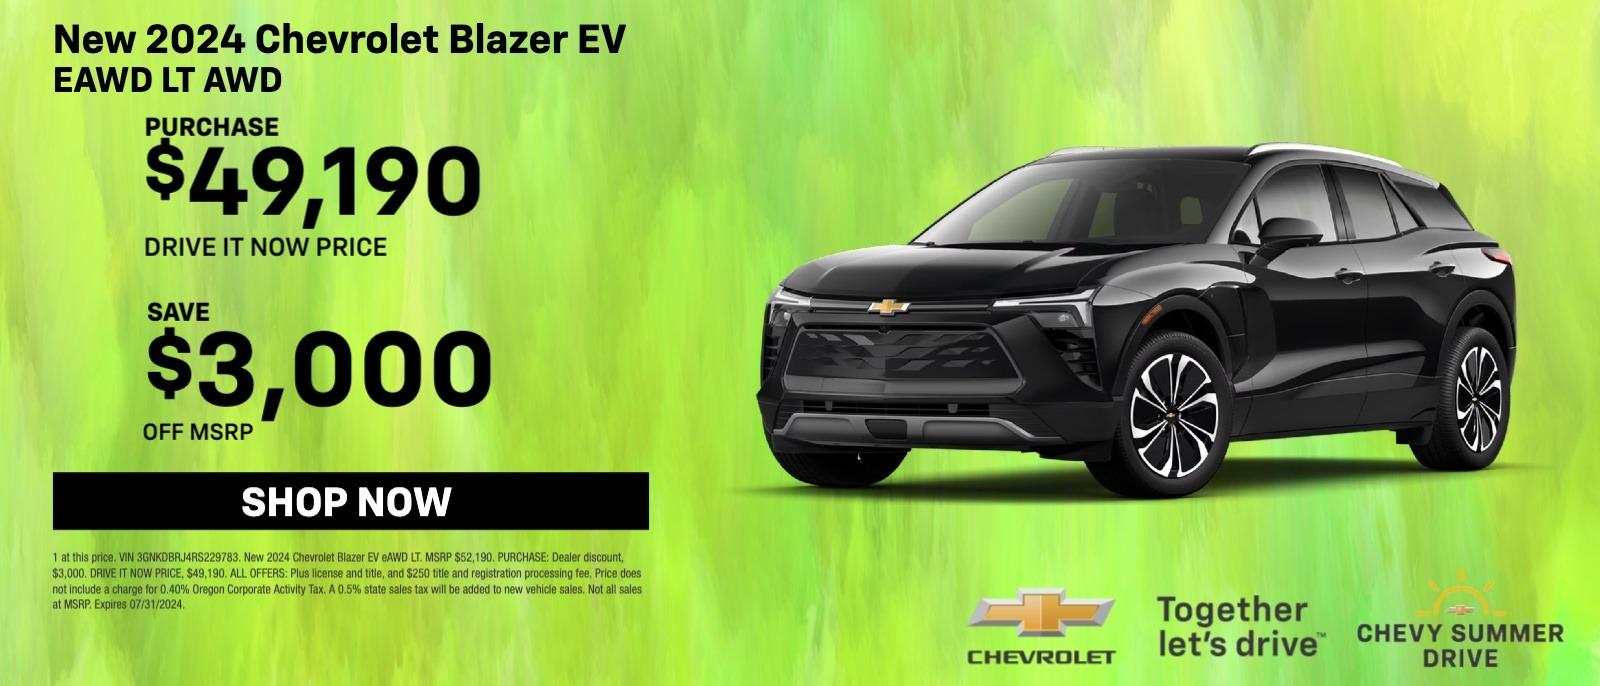 New Chevrolet Blazer EV